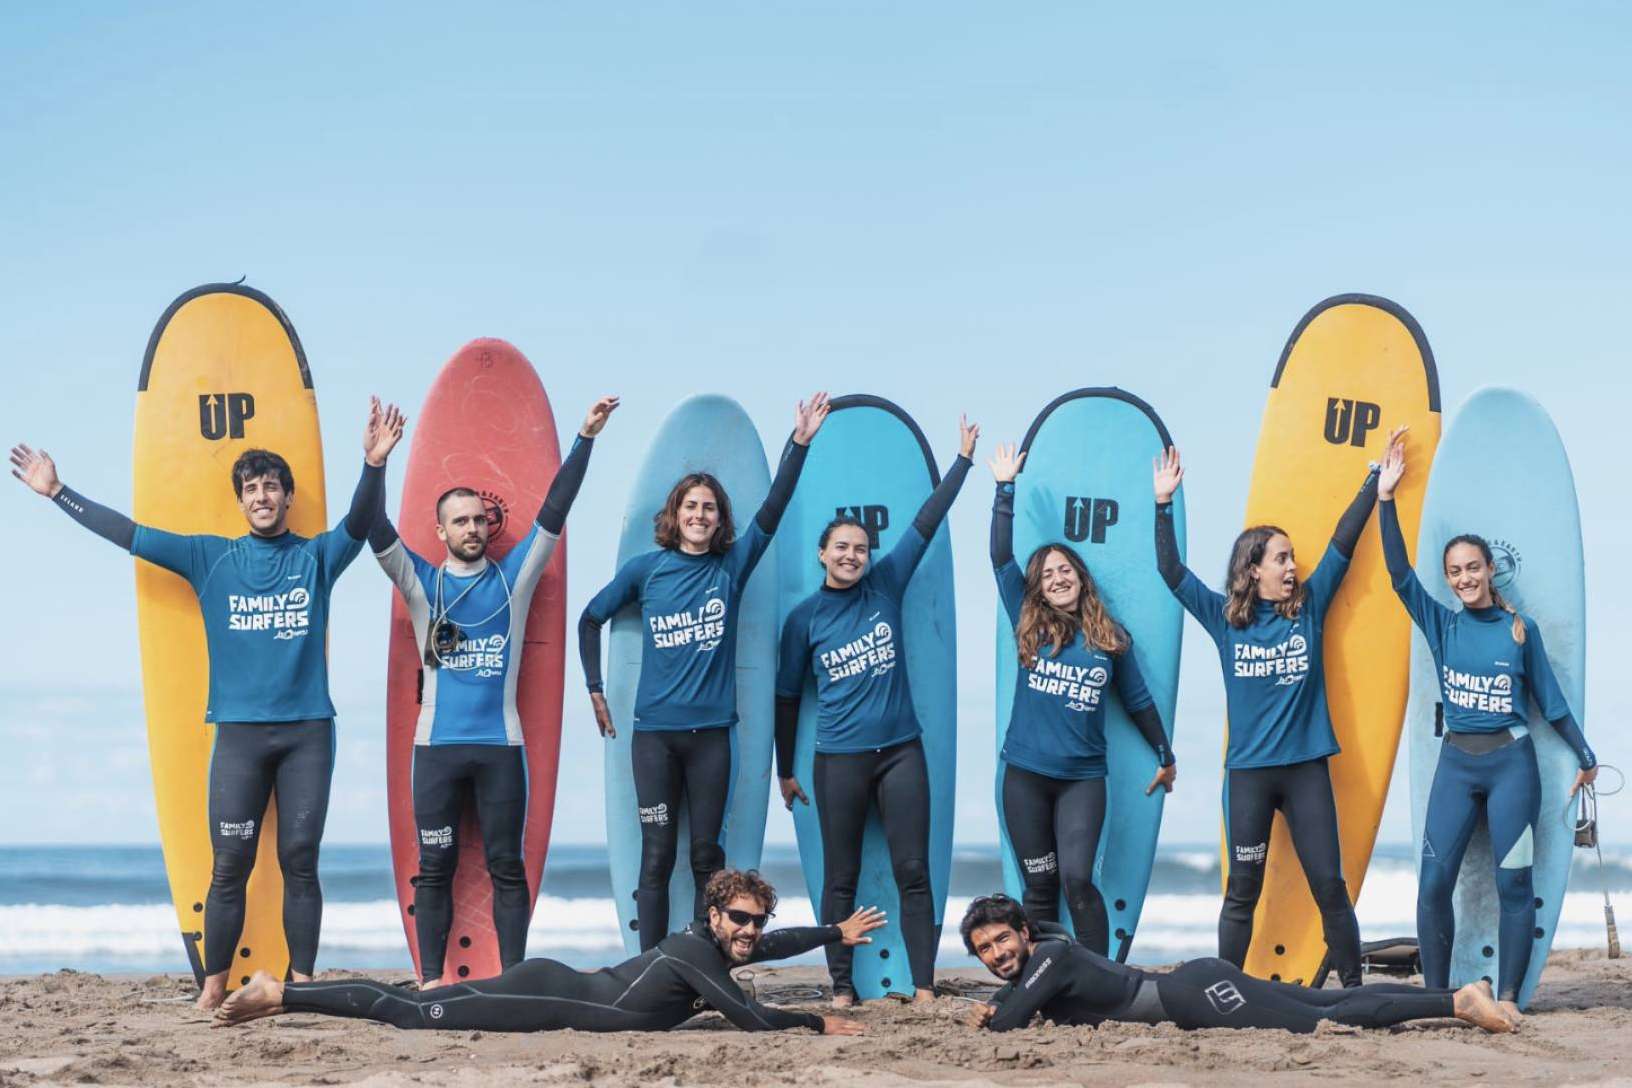 Aprender las principales técnicas de surf con el curso de iniciación de Family Surfers – Las Dunas